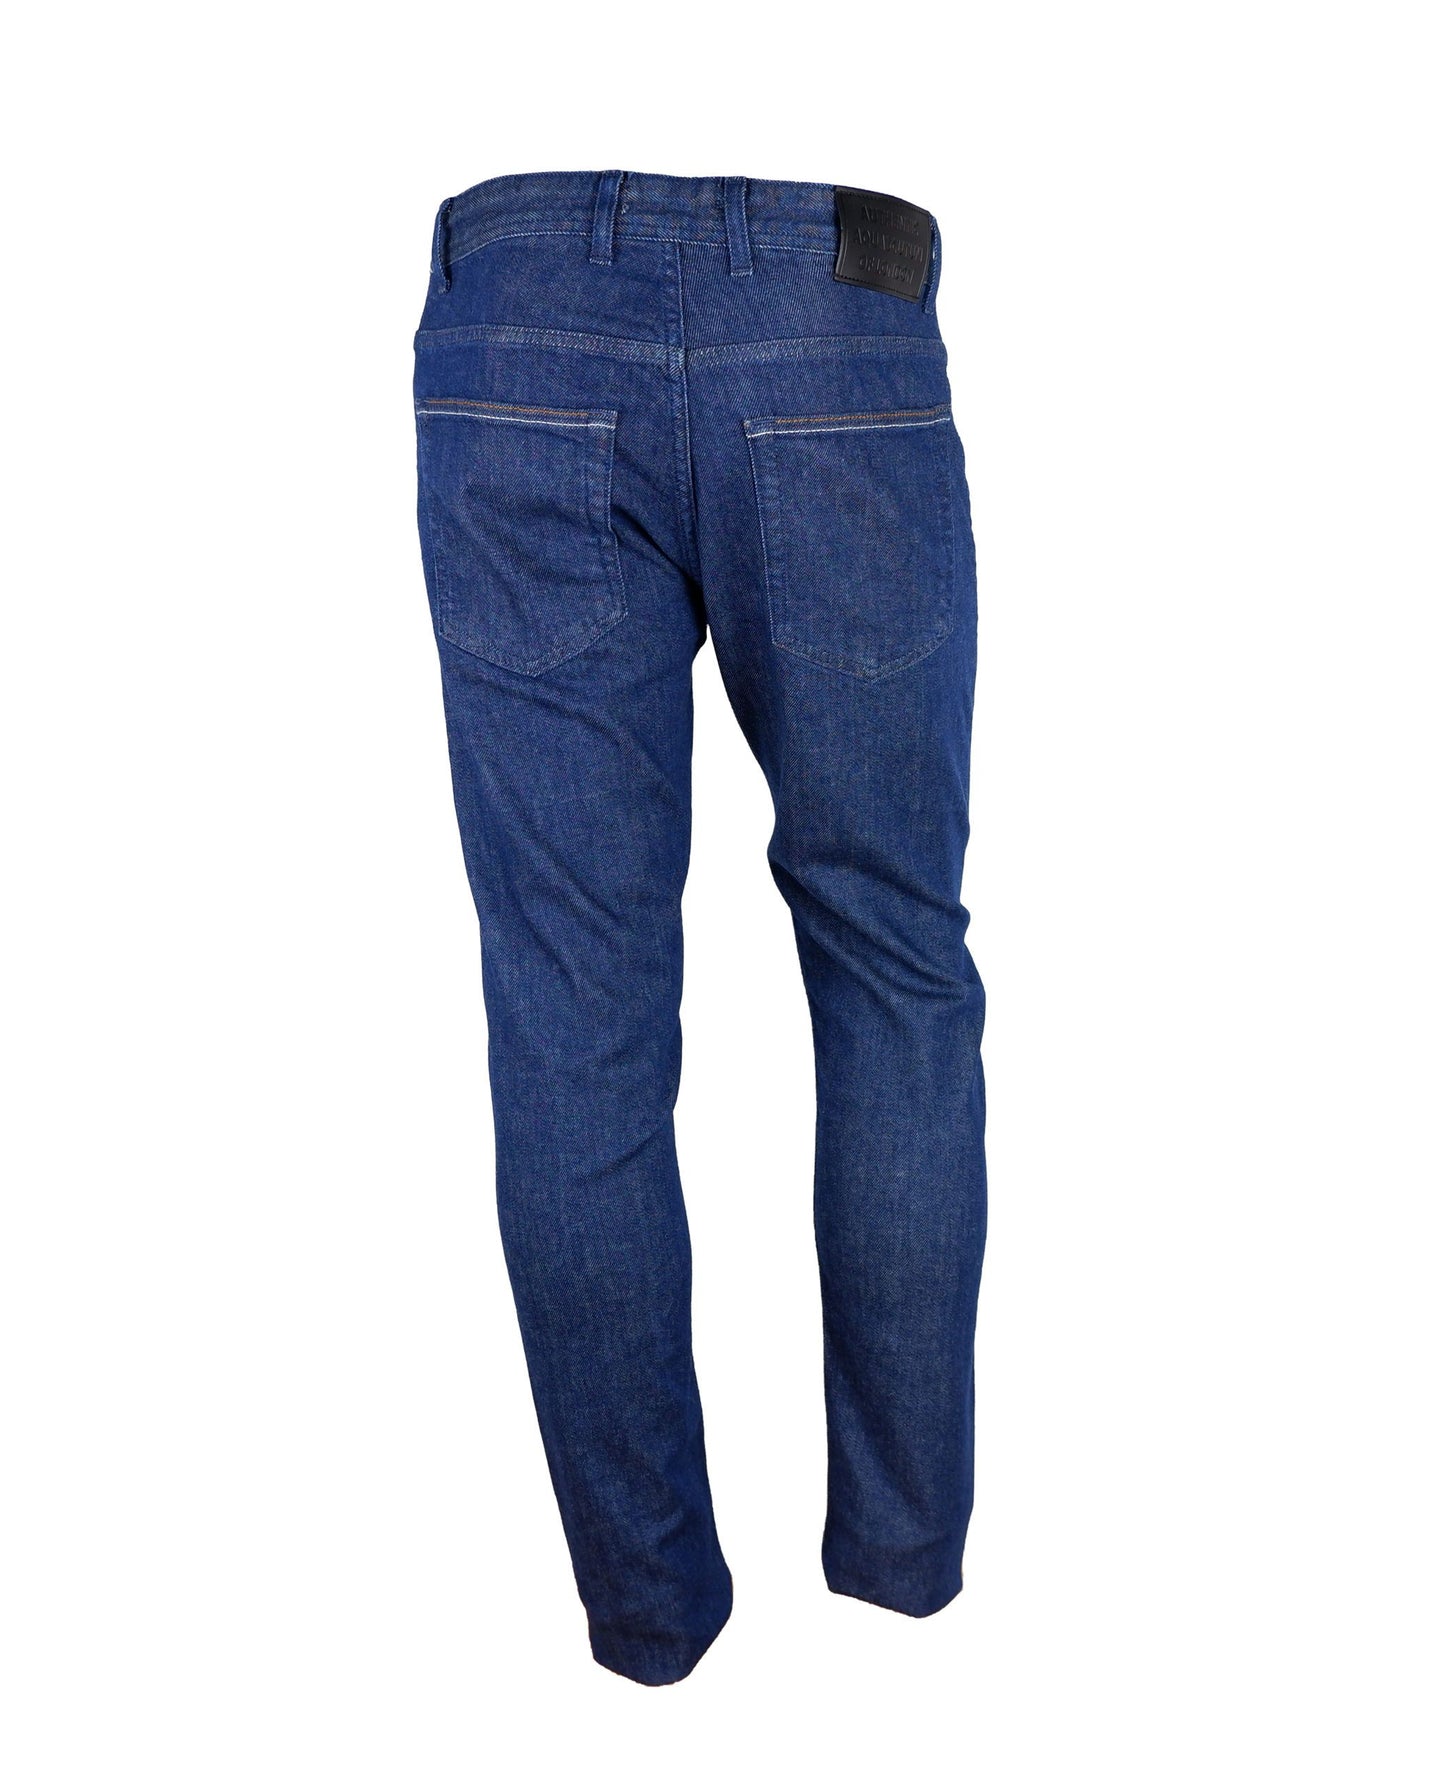 Aquascutum Blue Cotton Jeans & Pant